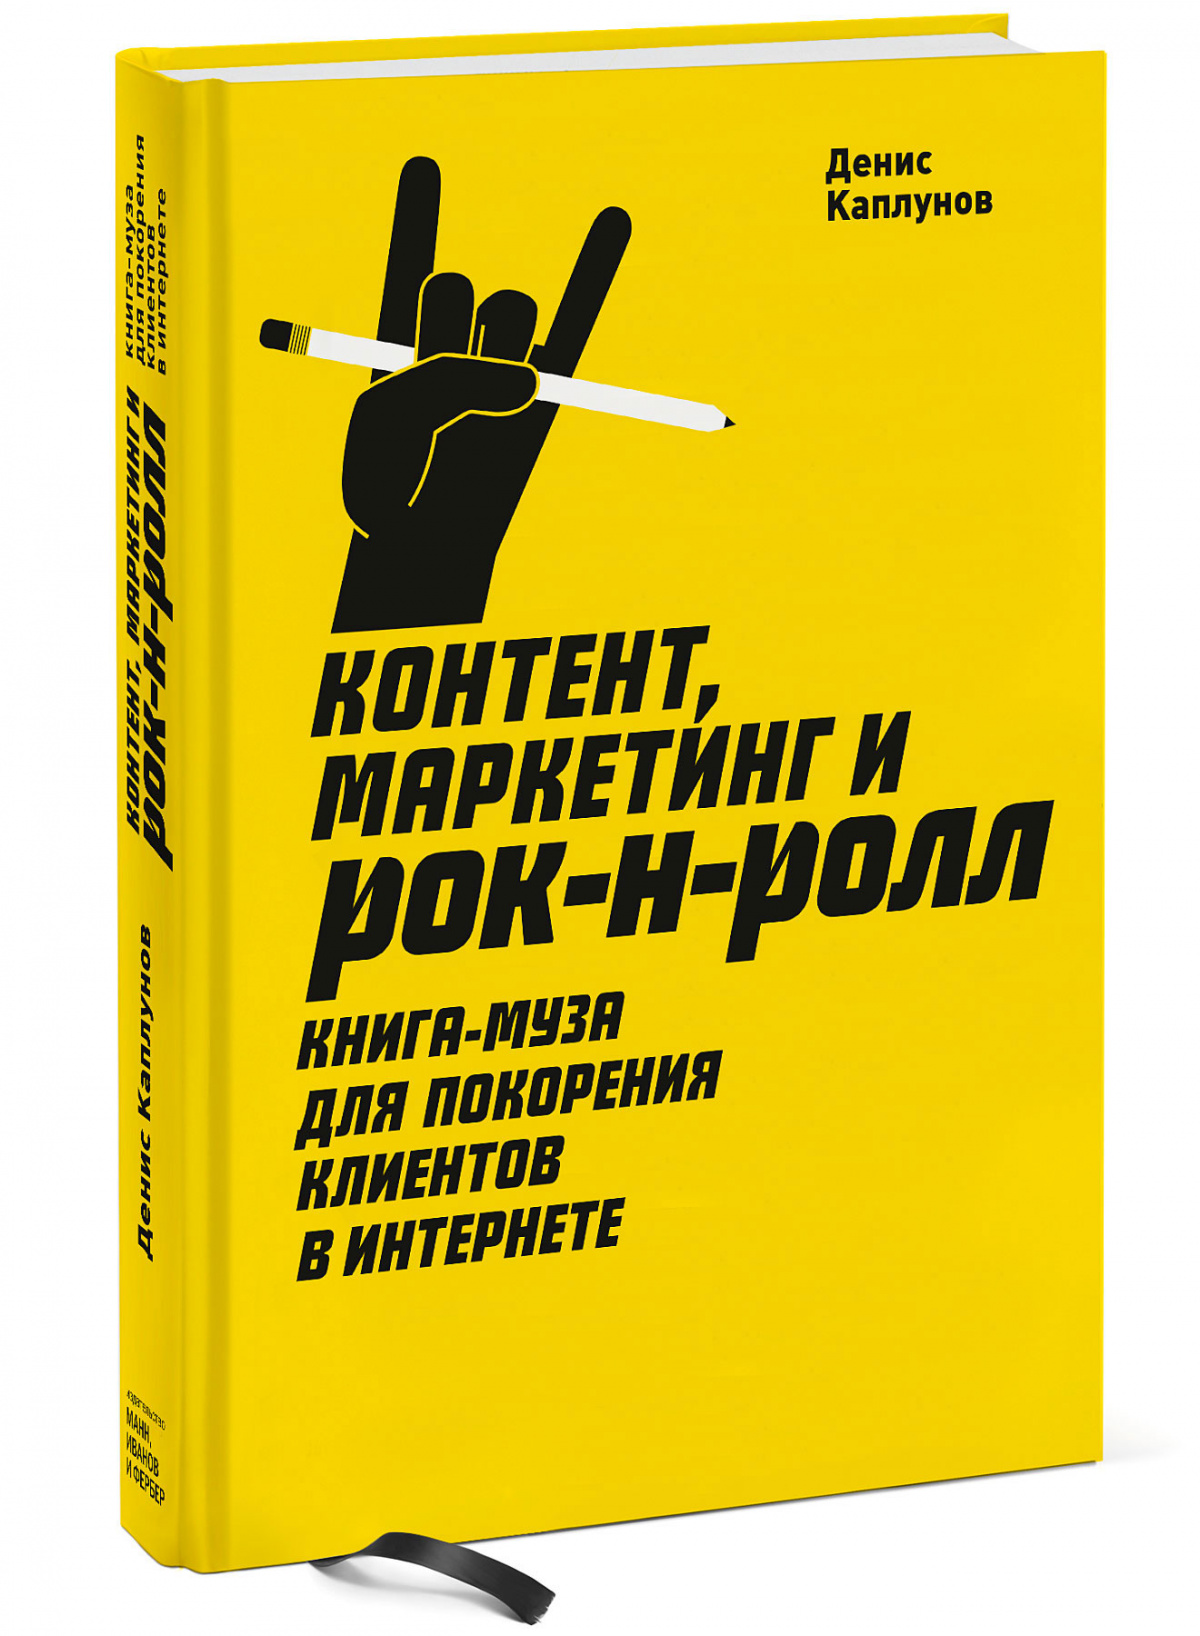 Книга «Контент, маркетинг и рок-н-ролл. Книга-муза для покорения клиентов в интернете», Денис Каплунов